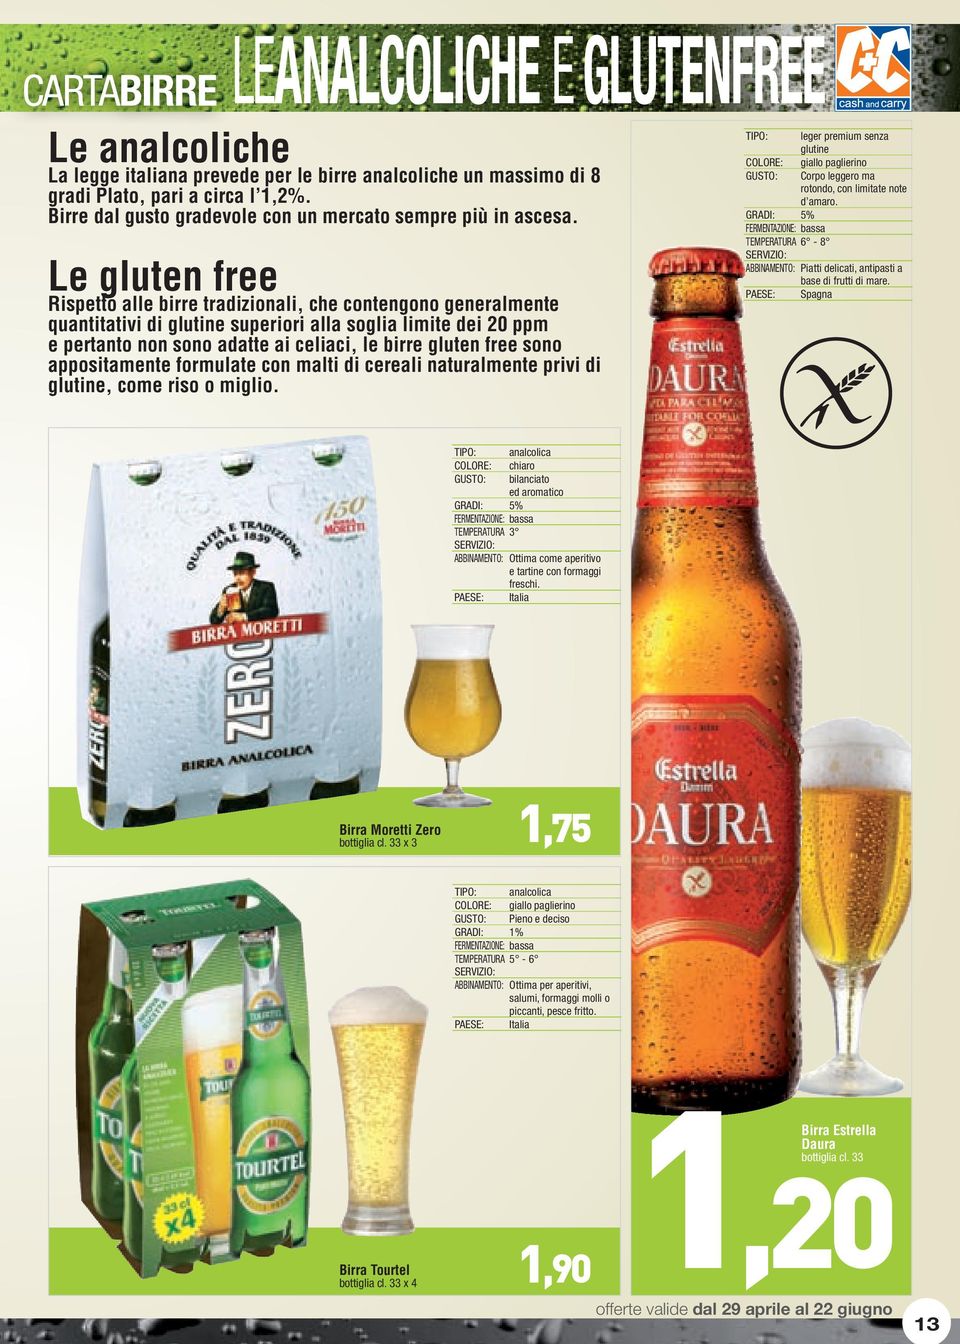 Le gluten free Rispetto alle birre tradizionali, che contengono generalmente quantitativi di glutine superiori alla soglia limite dei 20 ppm e pertanto non sono adatte ai celiaci, le birre gluten